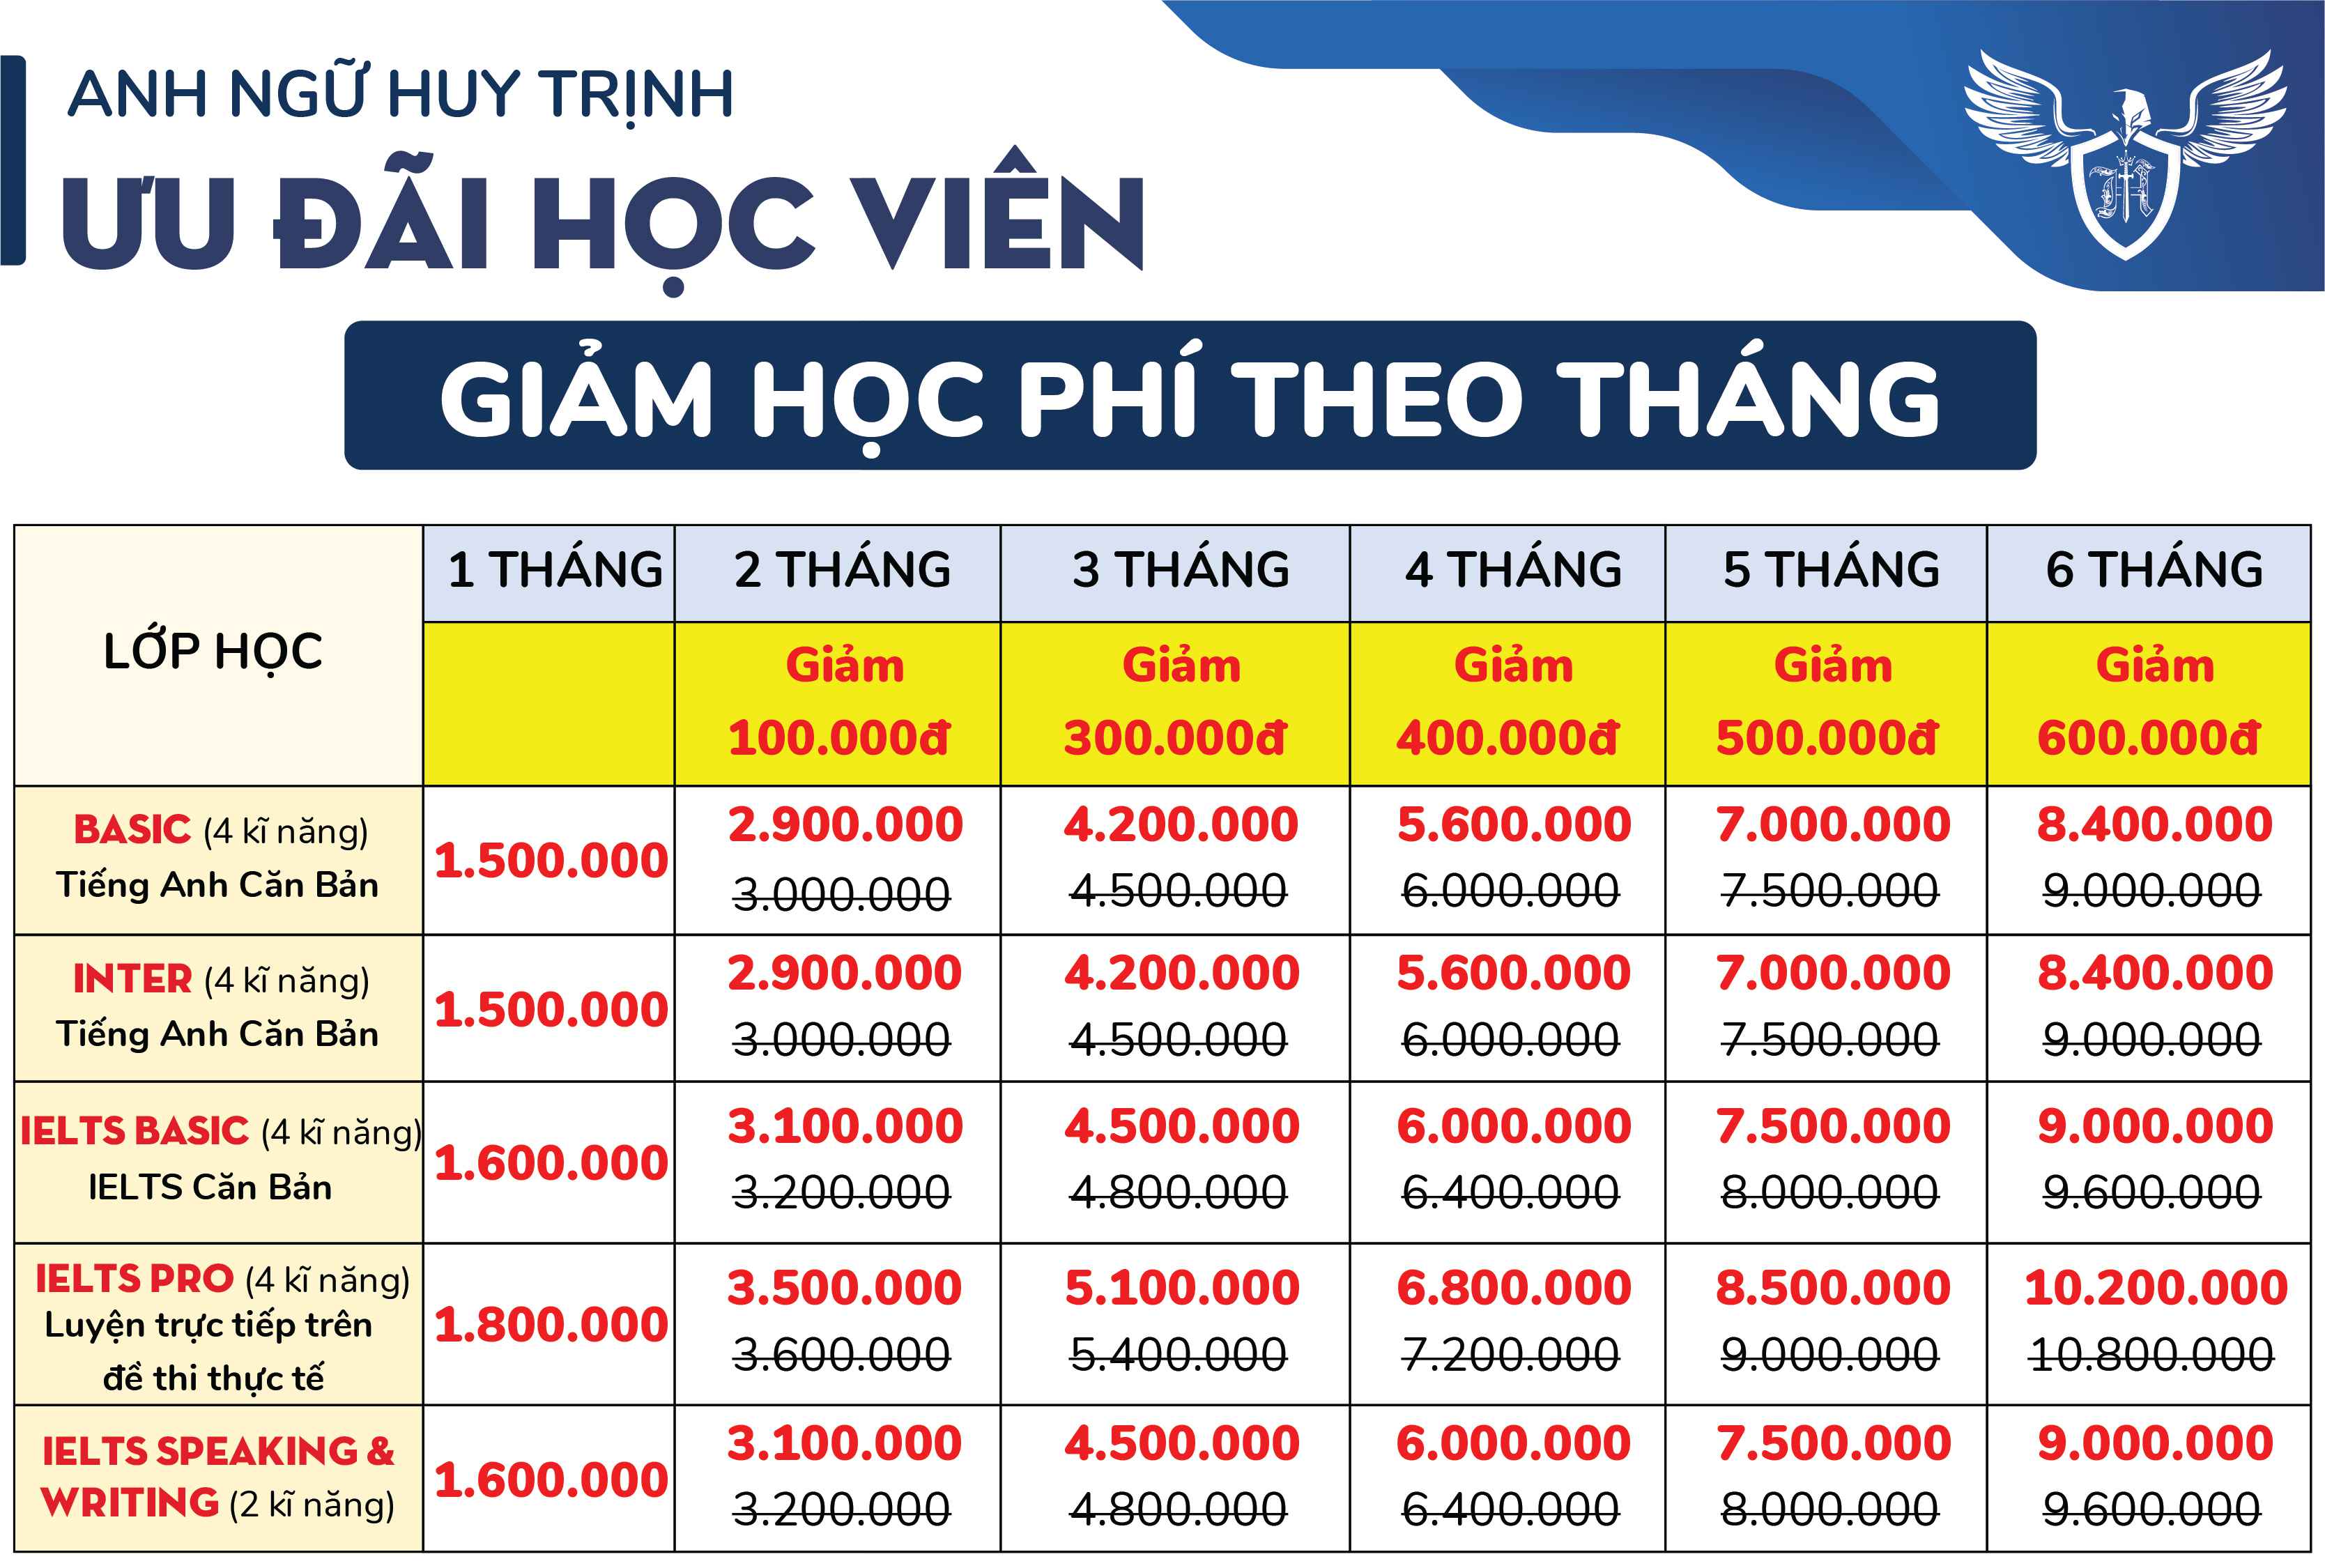 THIẾT KẾ ƯU ĐÃI HỌC VIÊN 02 - Học Phí Anh Ngữ Huy Trịnh